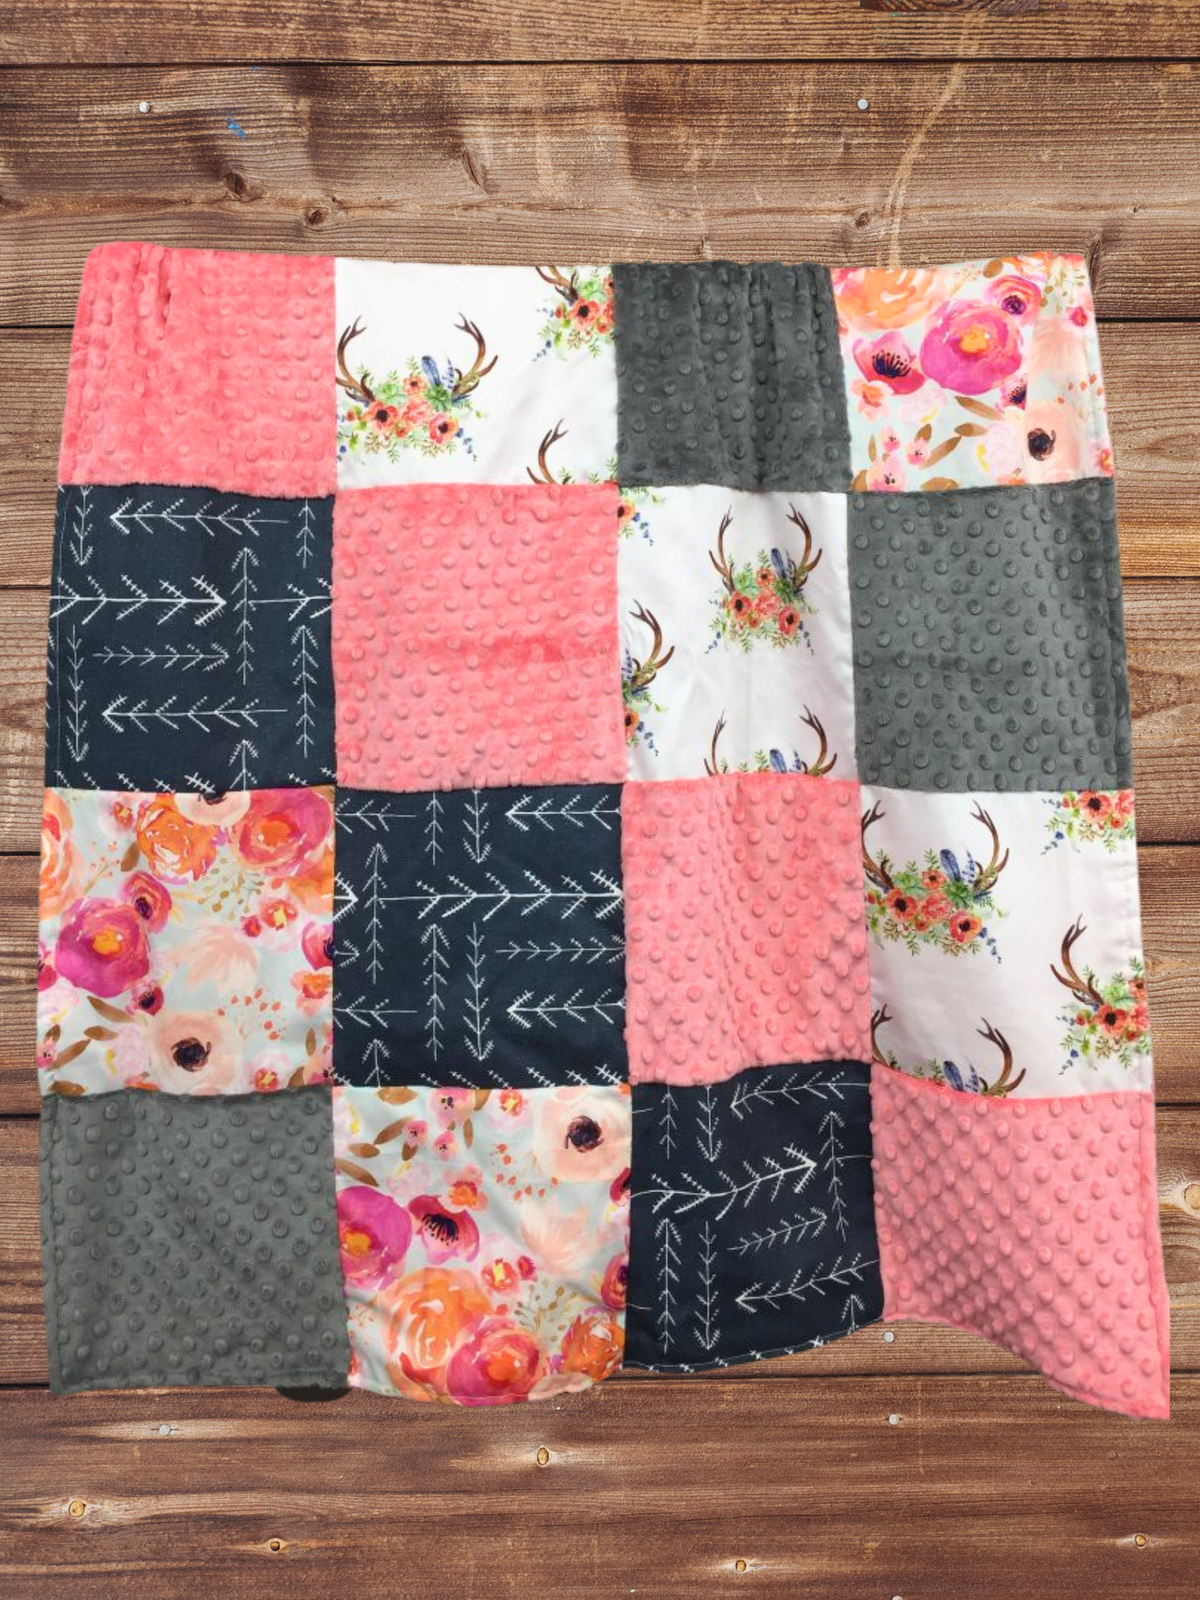 Patchwork Blanket - Floral Antler and Watercolor Floral Woodland Blanket